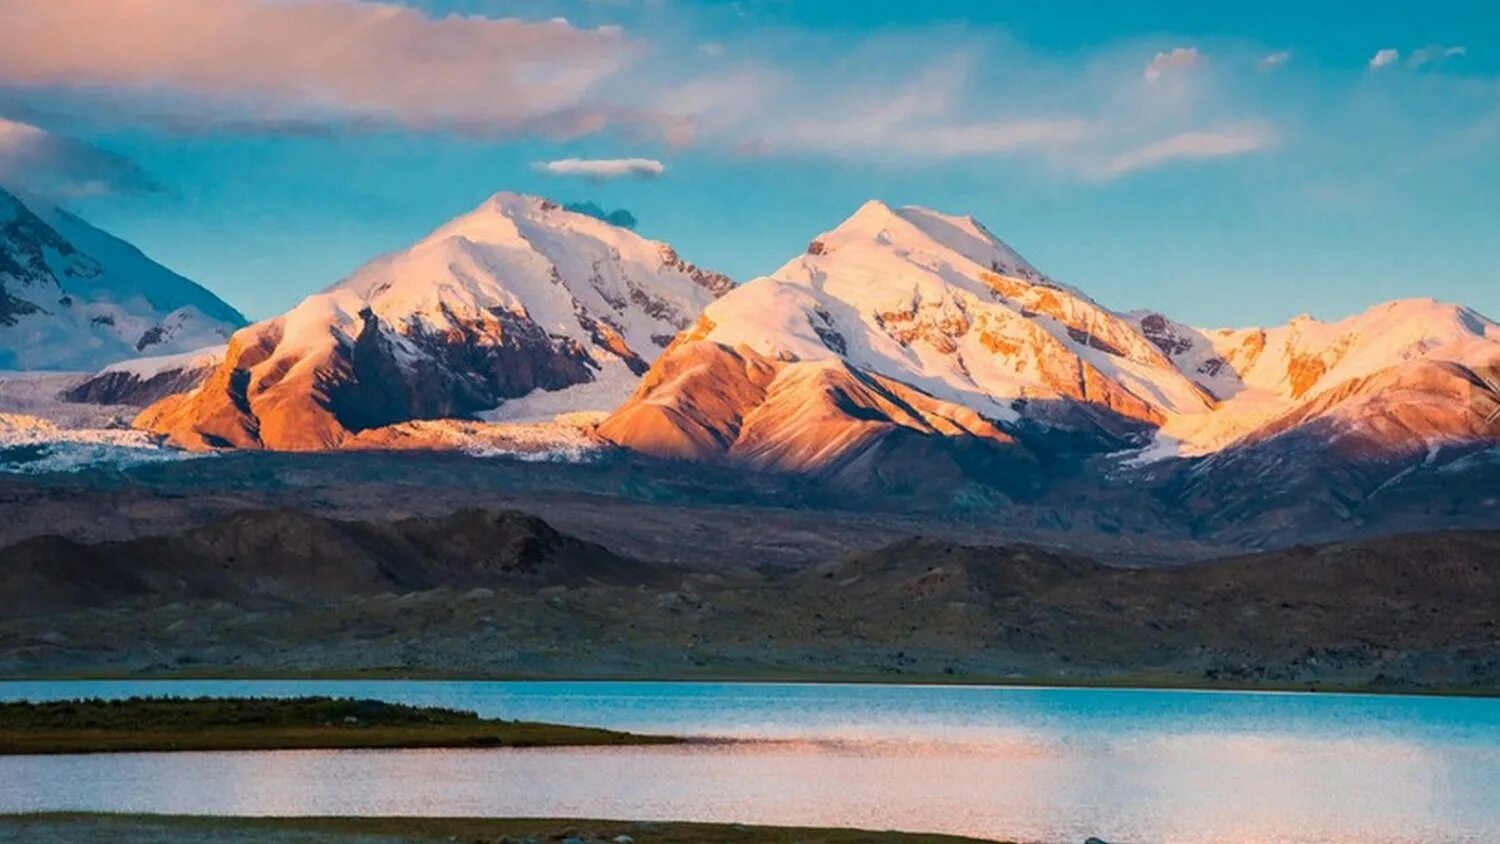 Grand pamir. Горы Памира в Таджикистане. Таджикистана пик Памир. Горная система Памир. Южный Памир горы.